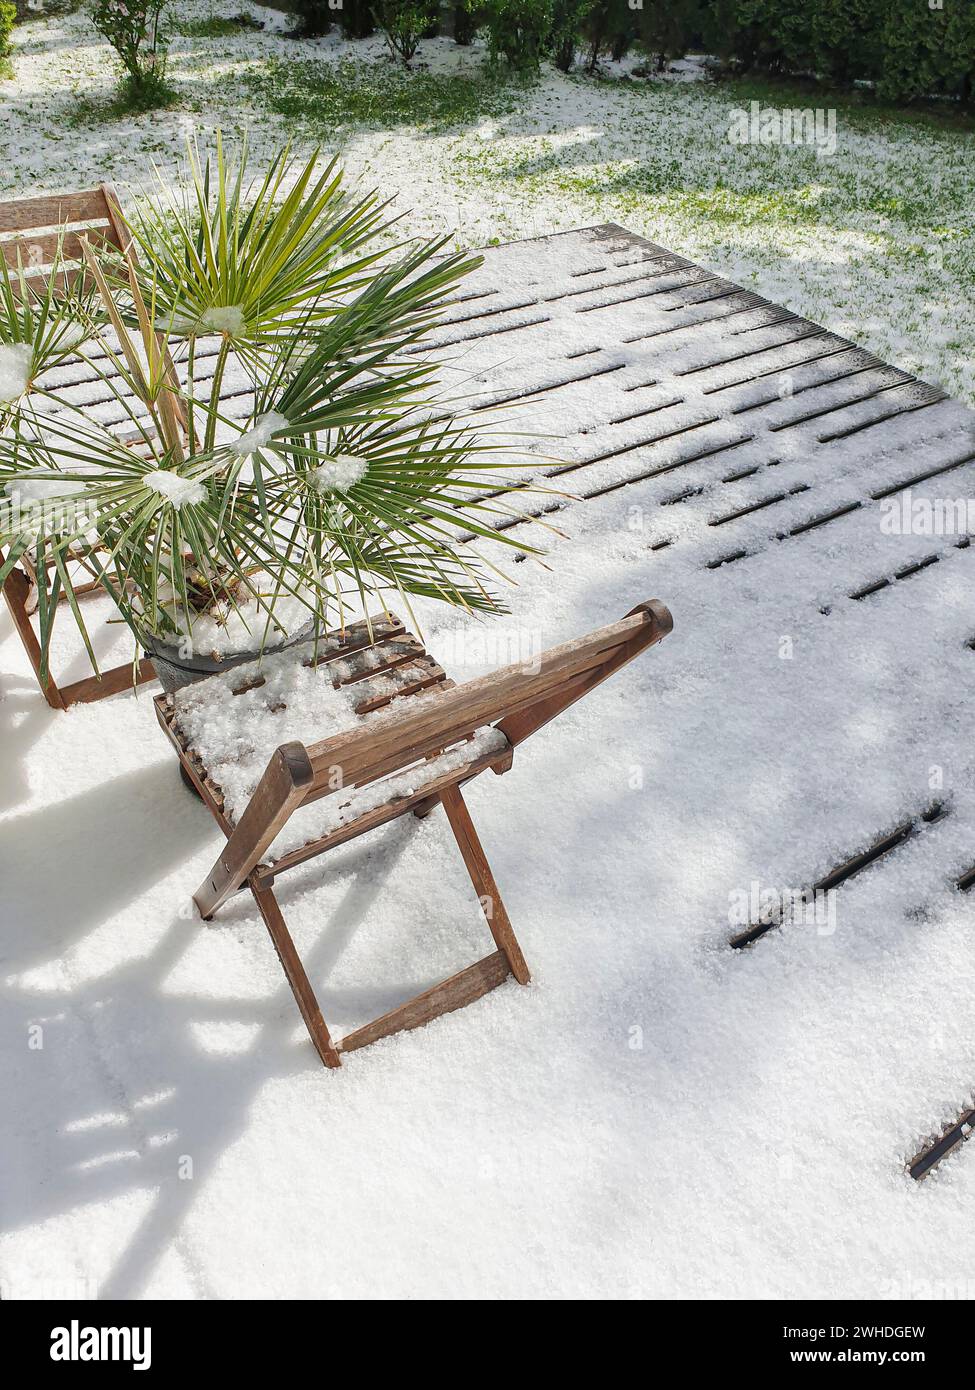 Vista dall'esterno sulla terrazza con mobili da giardino e piante verdi al fenomeno meteorologico della neve a maggio a Berlino a causa dei cambiamenti climatici Foto Stock